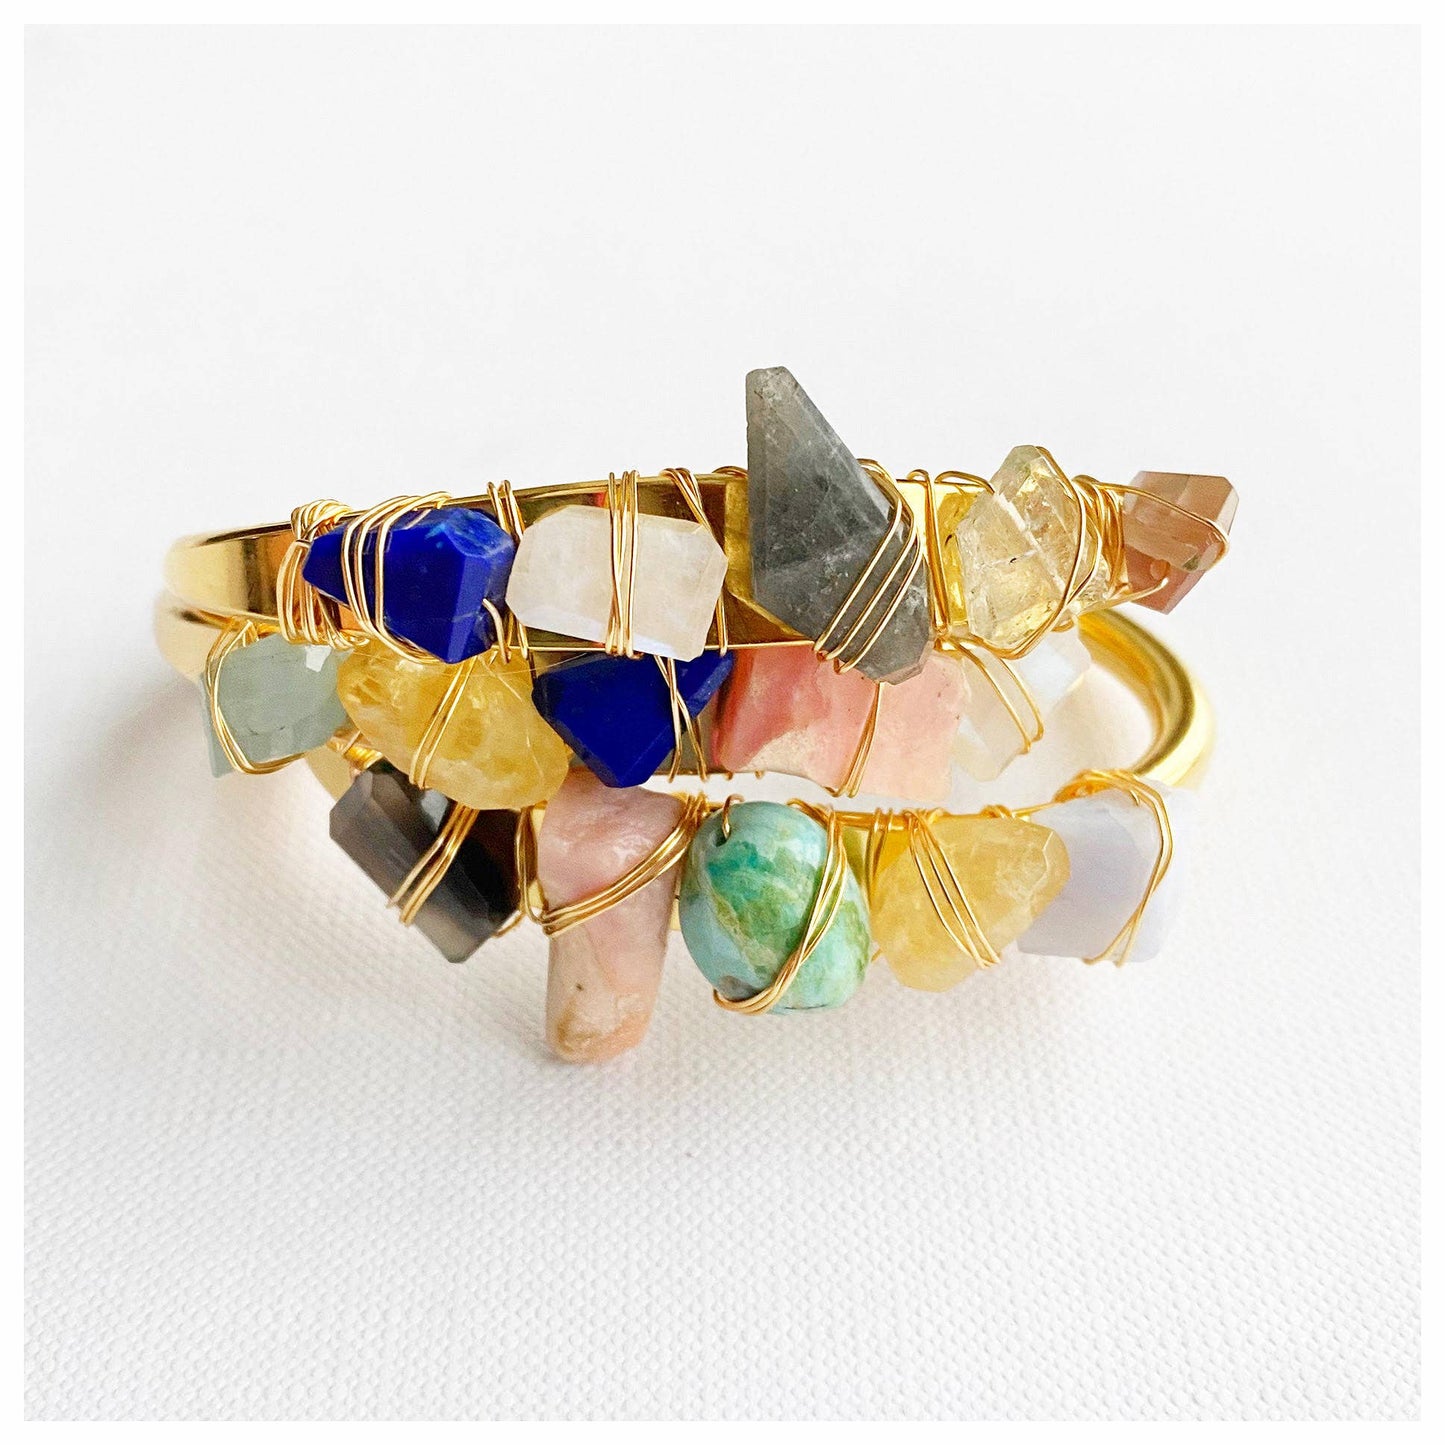 Crystal Cuff- Gem Stone Bracelet - by Etymology Jewelry - Ms.Meri Mak